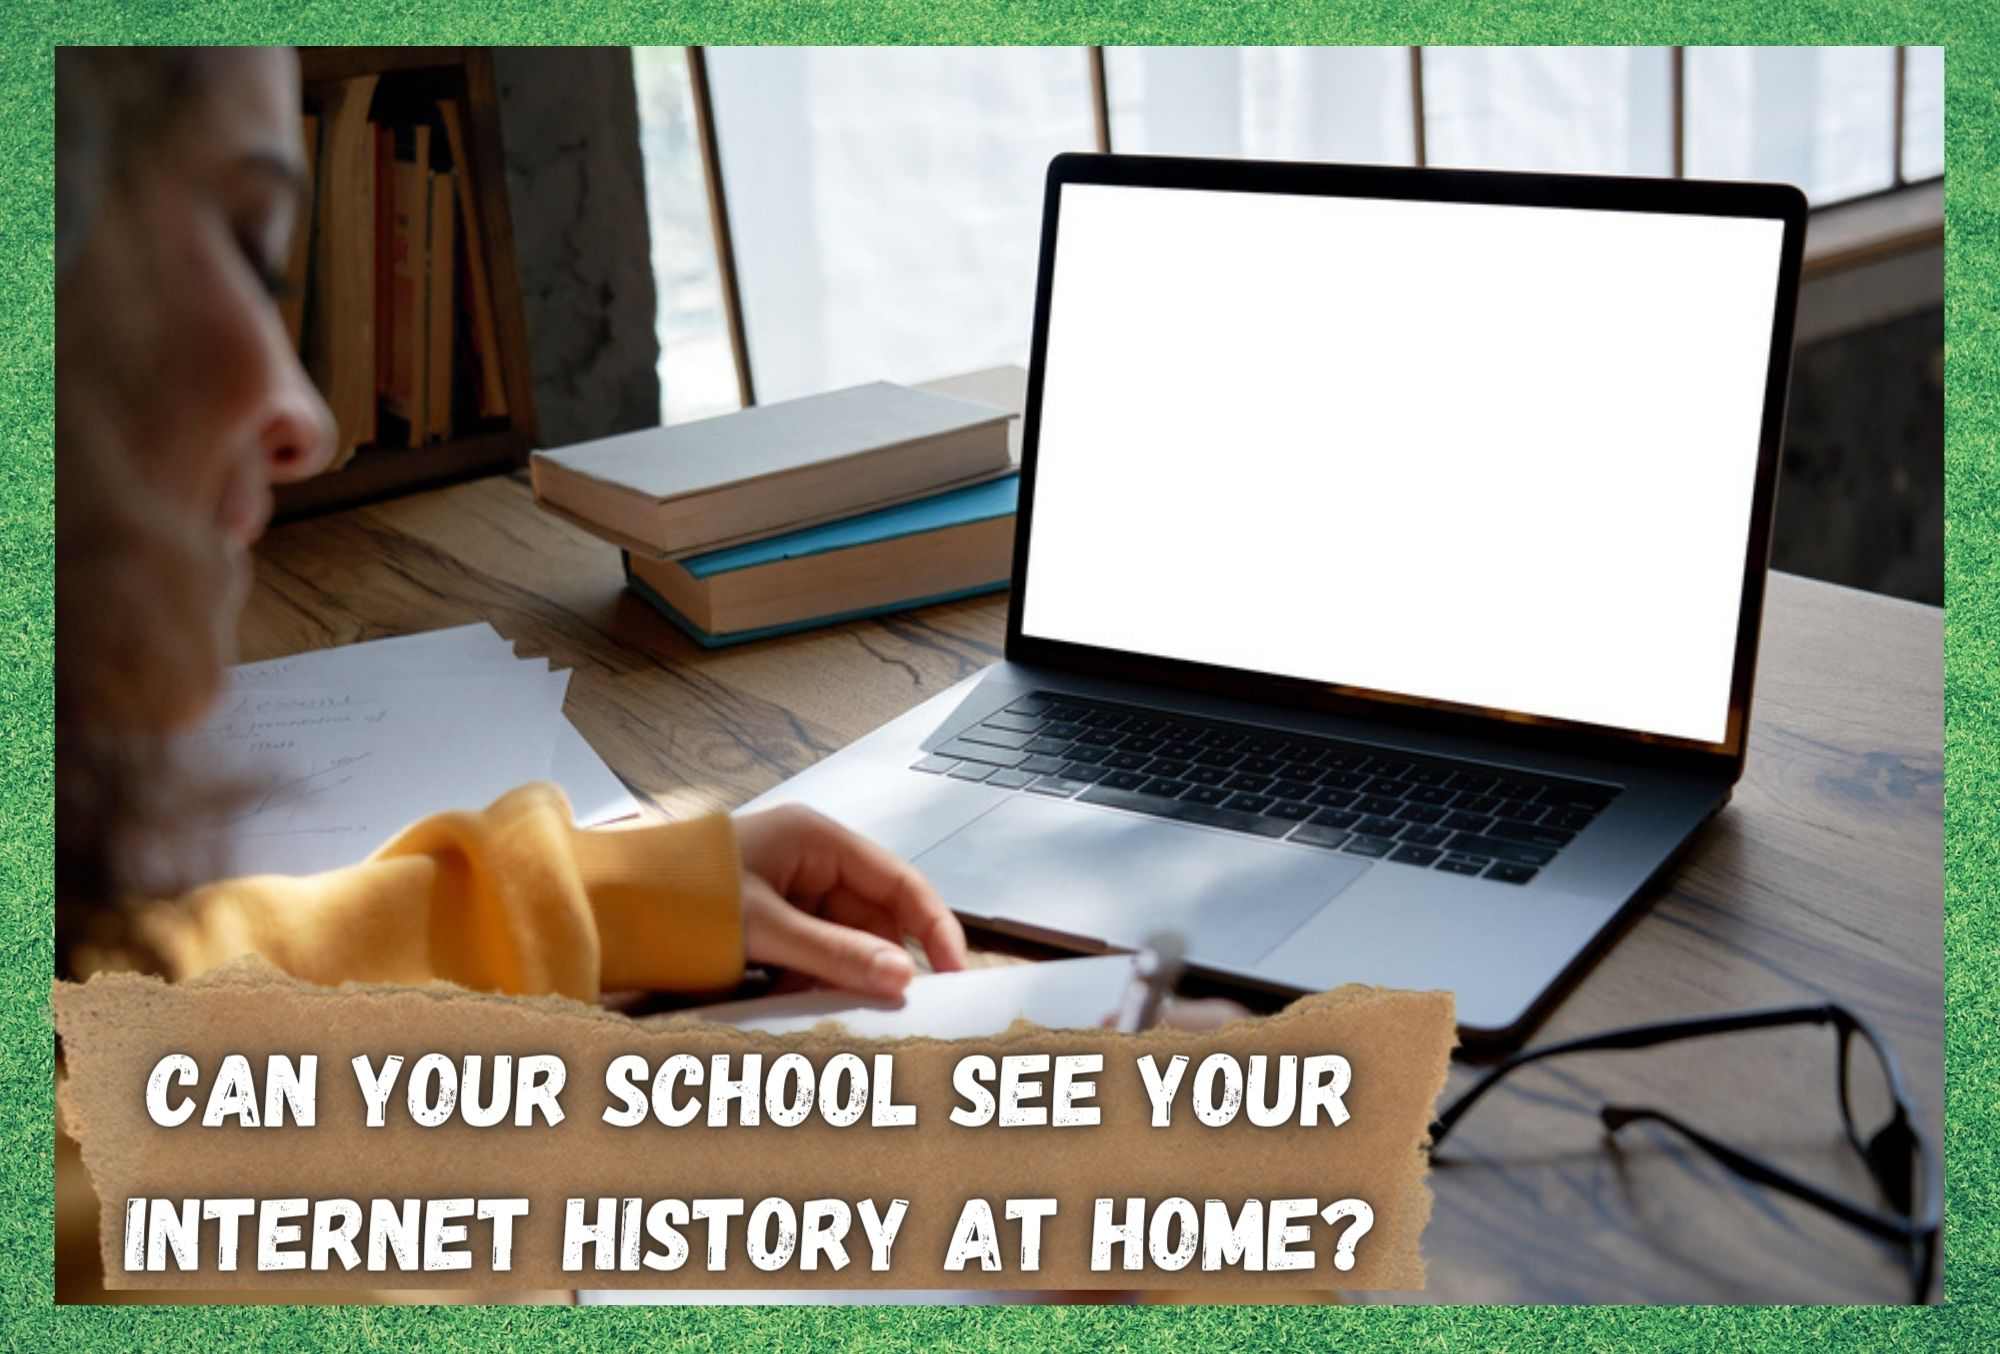 तुमची शाळा तुमचा इंटरनेट इतिहास घरी पाहू शकते का?